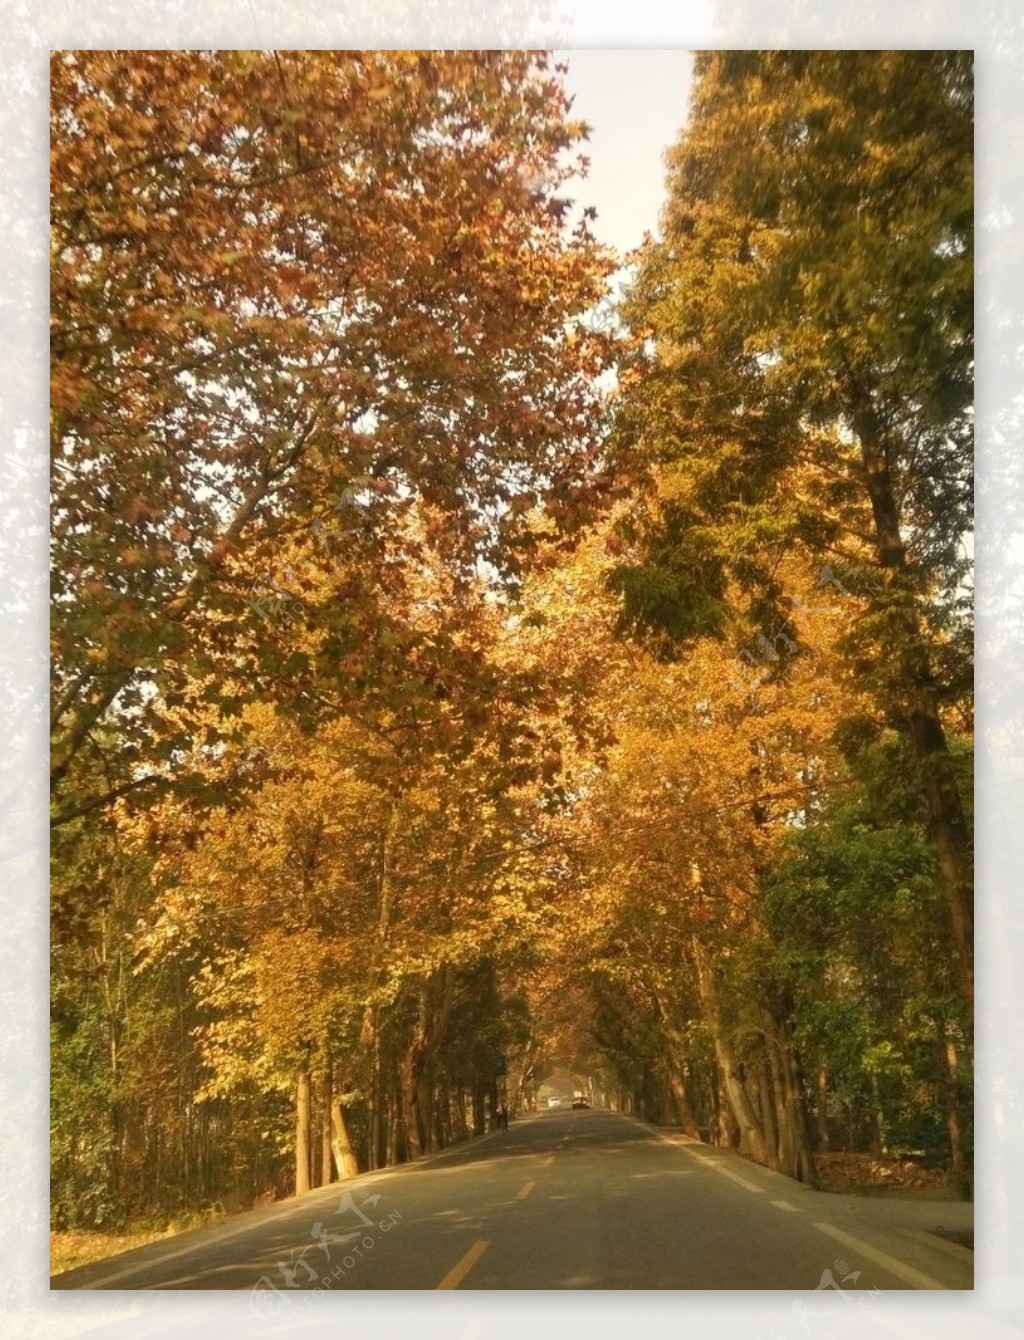 公路马路树木秋天黄叶